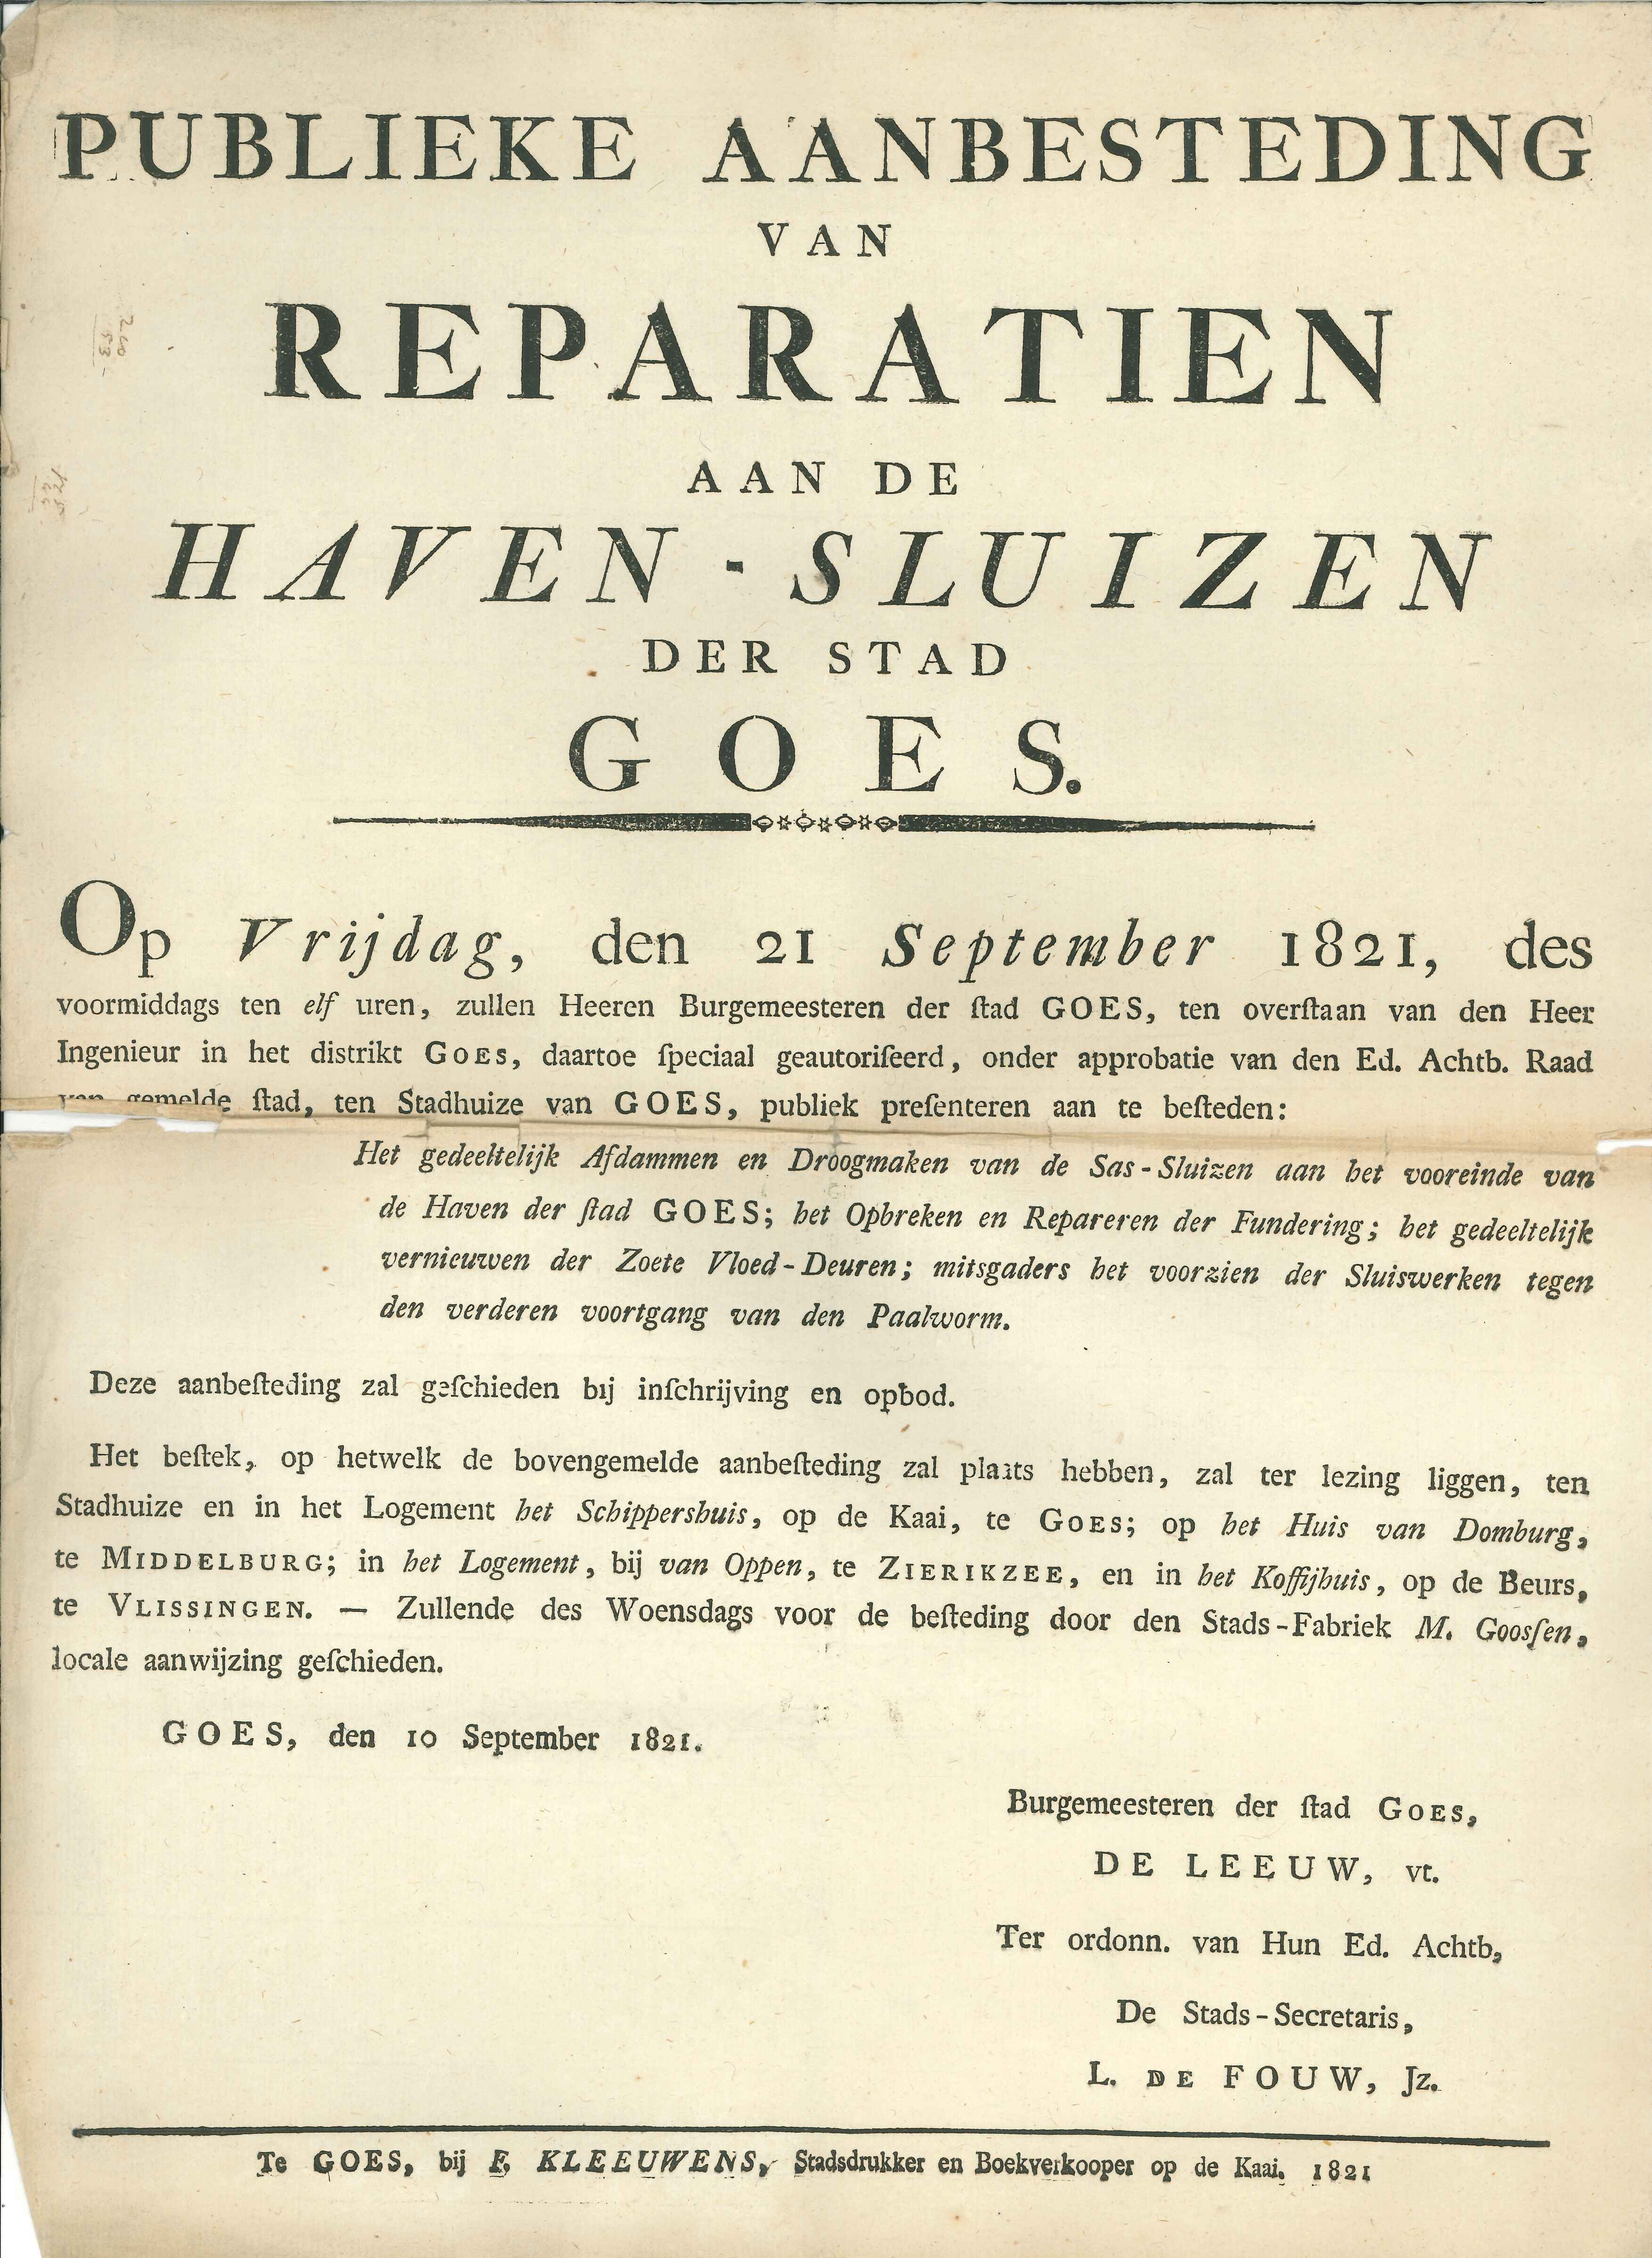 Bekendmaking over de aanbesteding van de reparatie van de sluis, 1821. GAG.ASG.inv.nr. 2405.